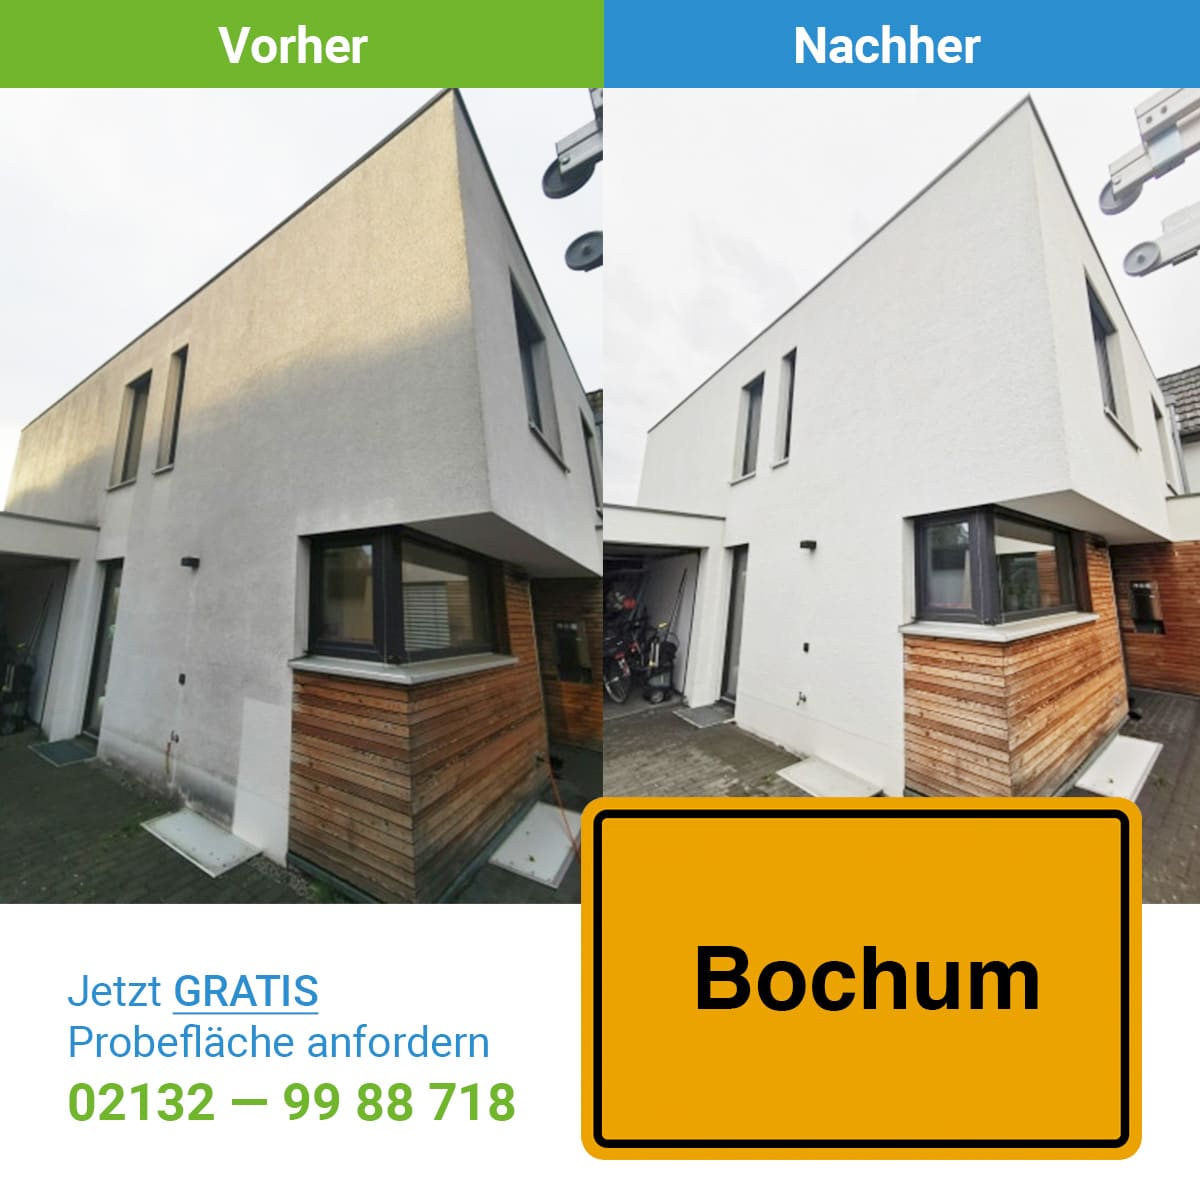 Fassadenreinigung in Bochum, SC SystemCare GmbH, ein Vorher-Nachher Bild mit dem Ergeniss der Reinigung -professionelle Fassadenreinigung